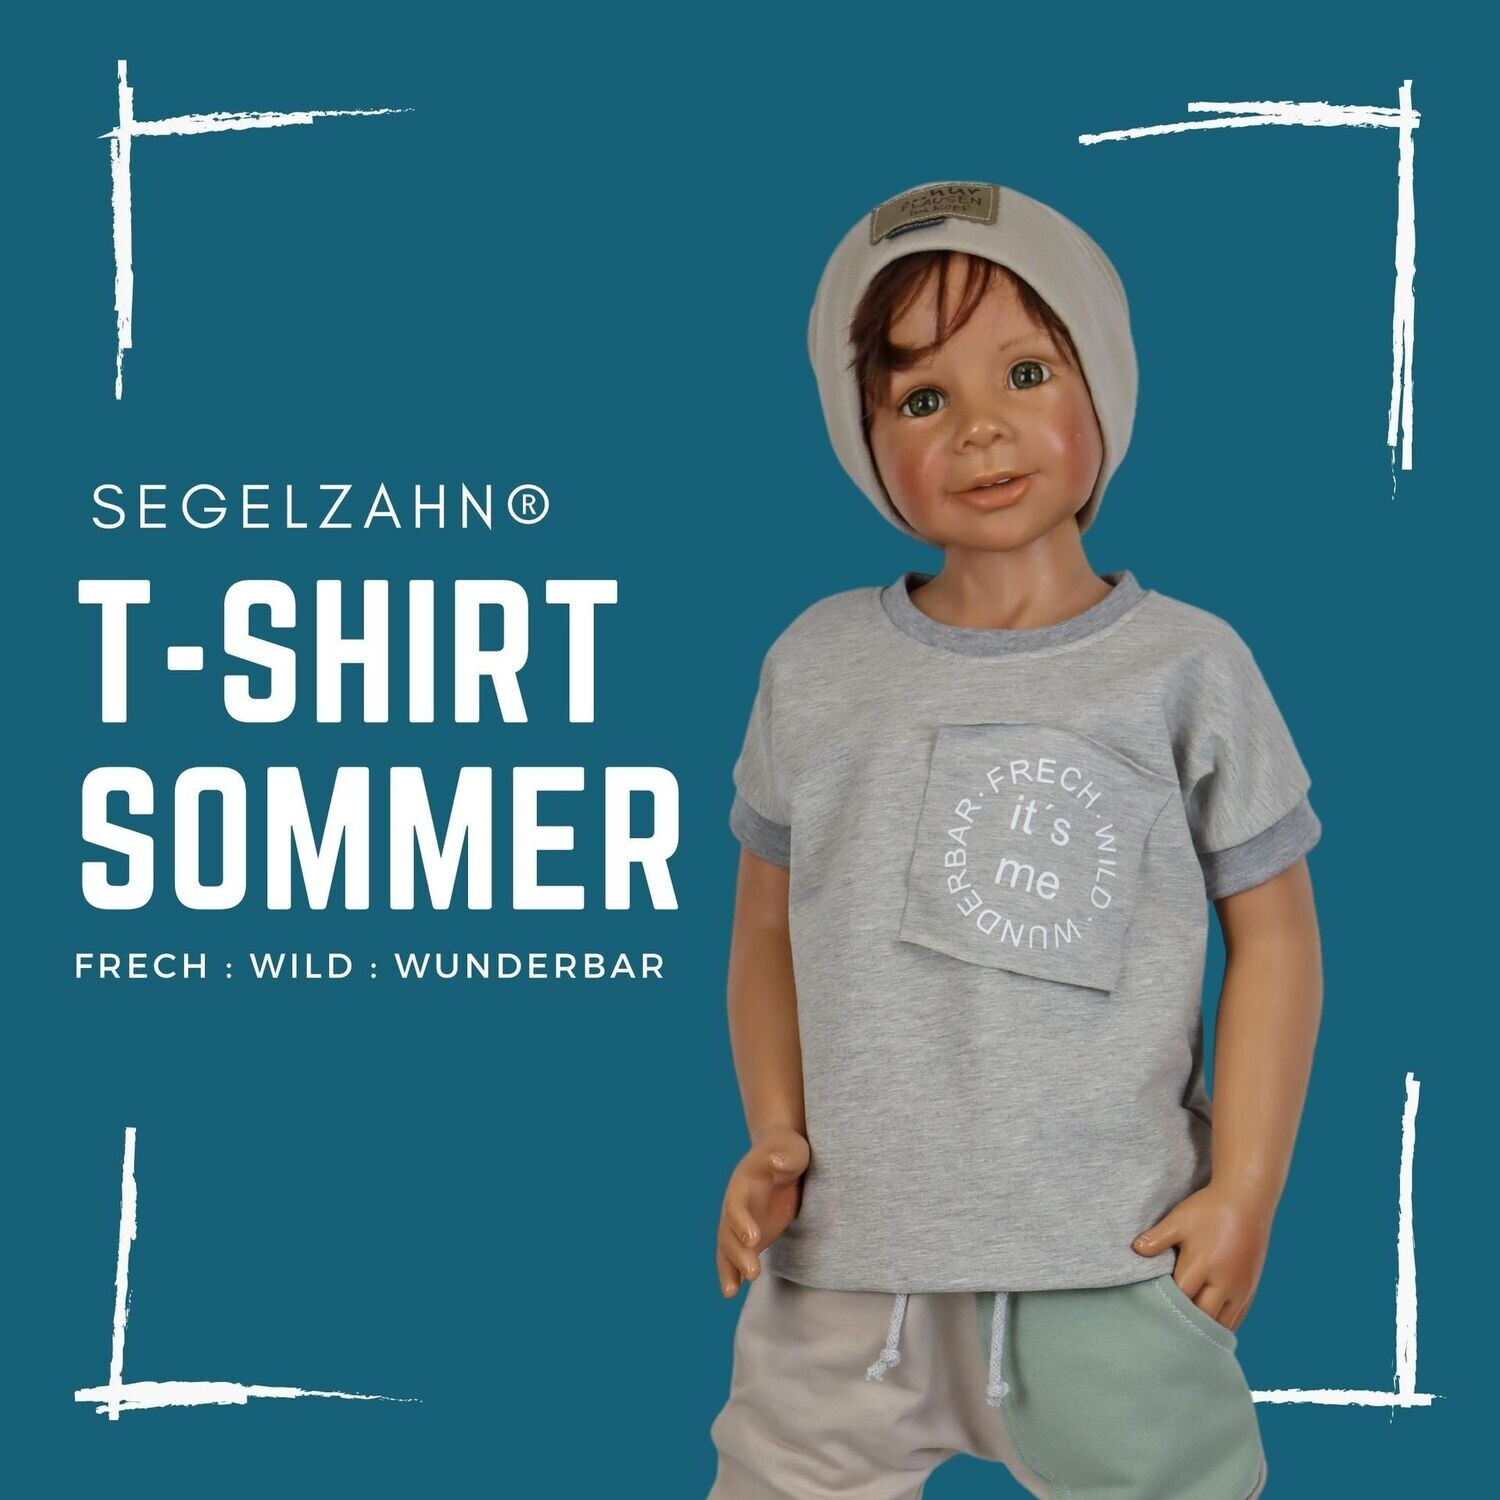 Tshirt Unisex Grau - frech wild wunderbar - ich - statement Shirt für Jungen und Mädchen - Segelzahn - Kindershirt - Oberteile - Sommer für Kind und Baby